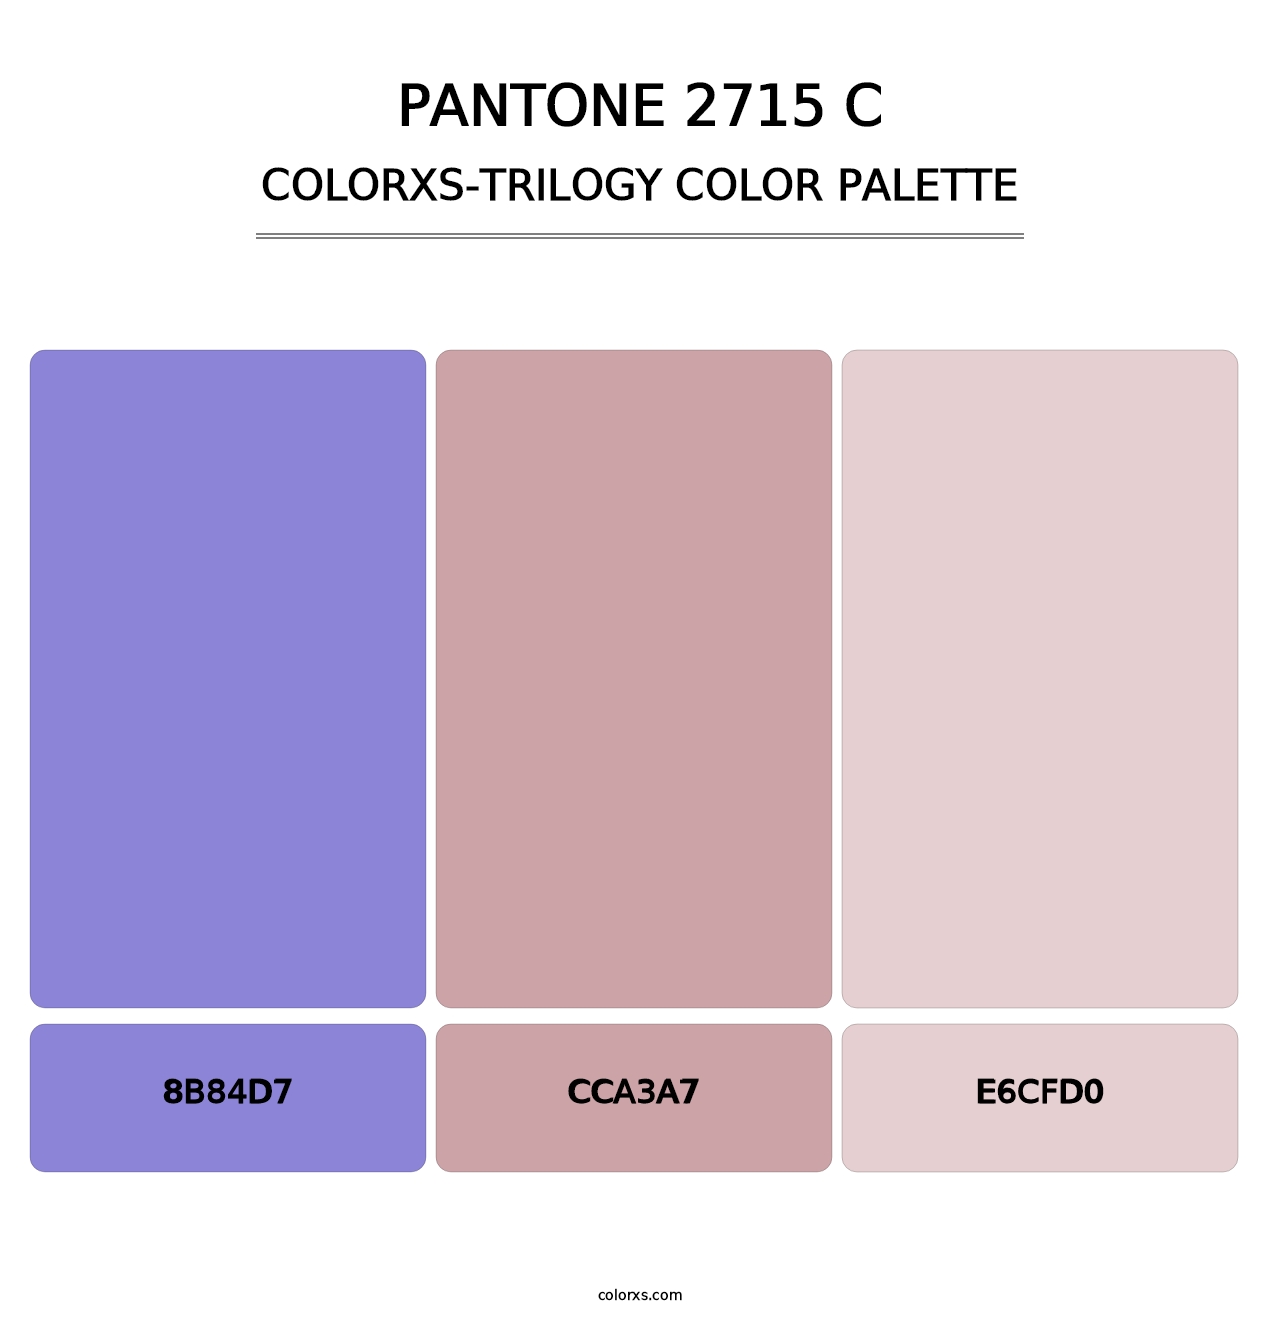 PANTONE 2715 C - Colorxs Trilogy Palette